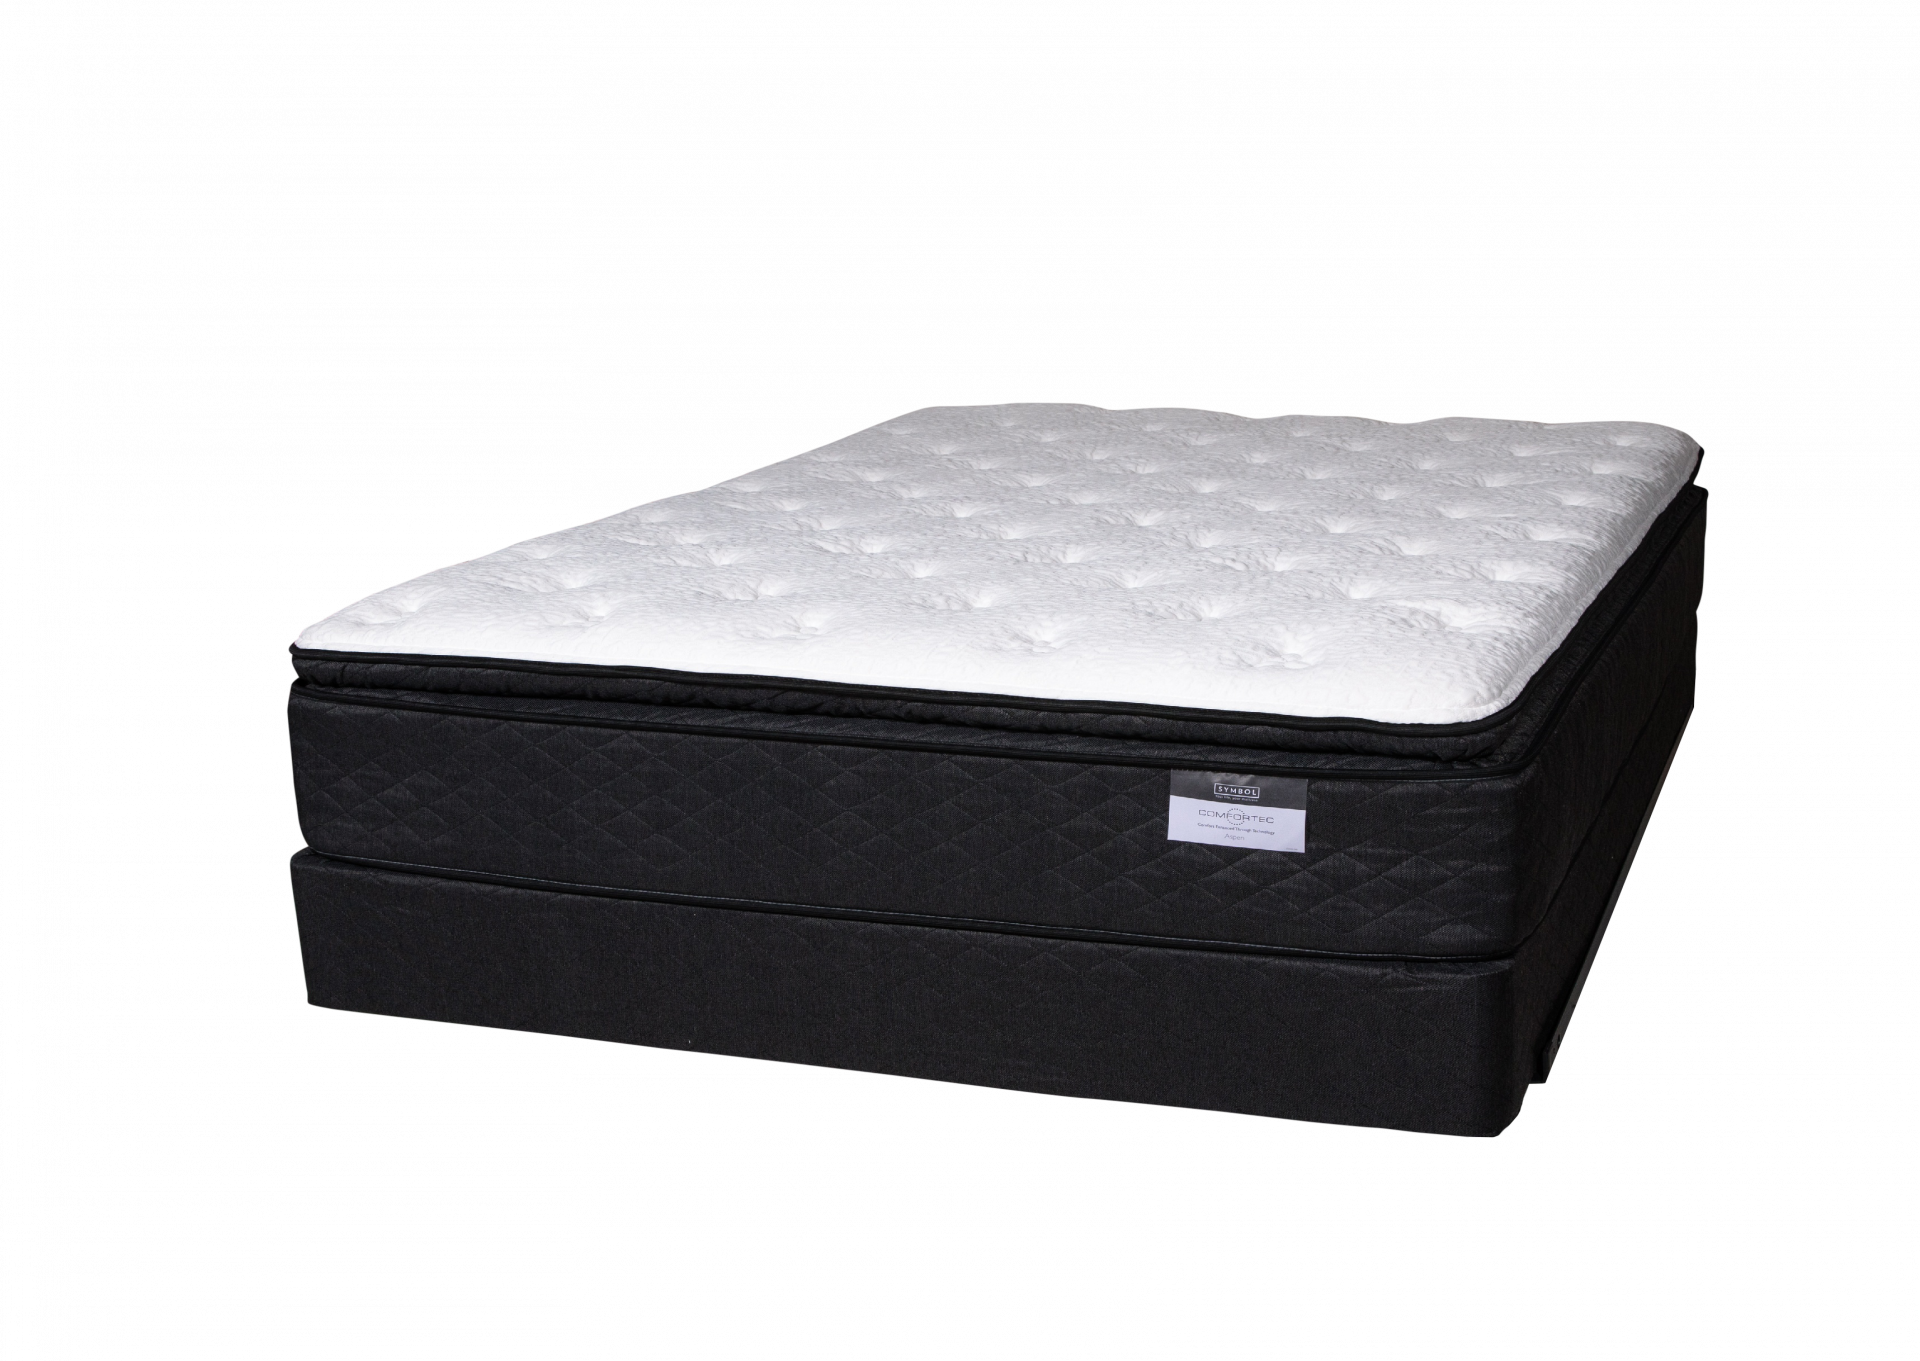 Aspen Pillow Top Cali King mattress set by Symbol Mattress,Symbol Mattress